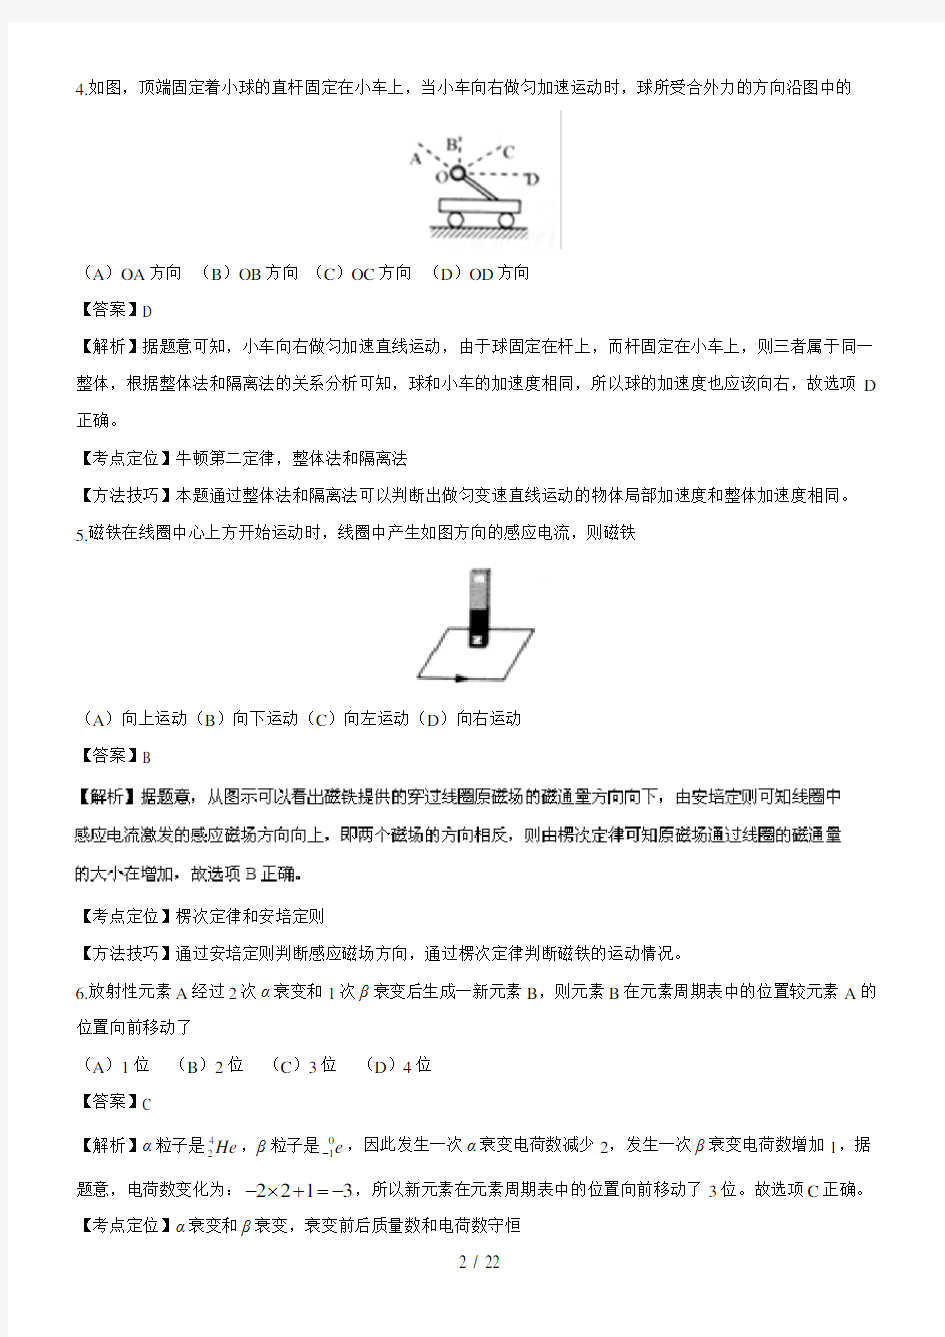 2016年高考试题(物理)上海卷解析版